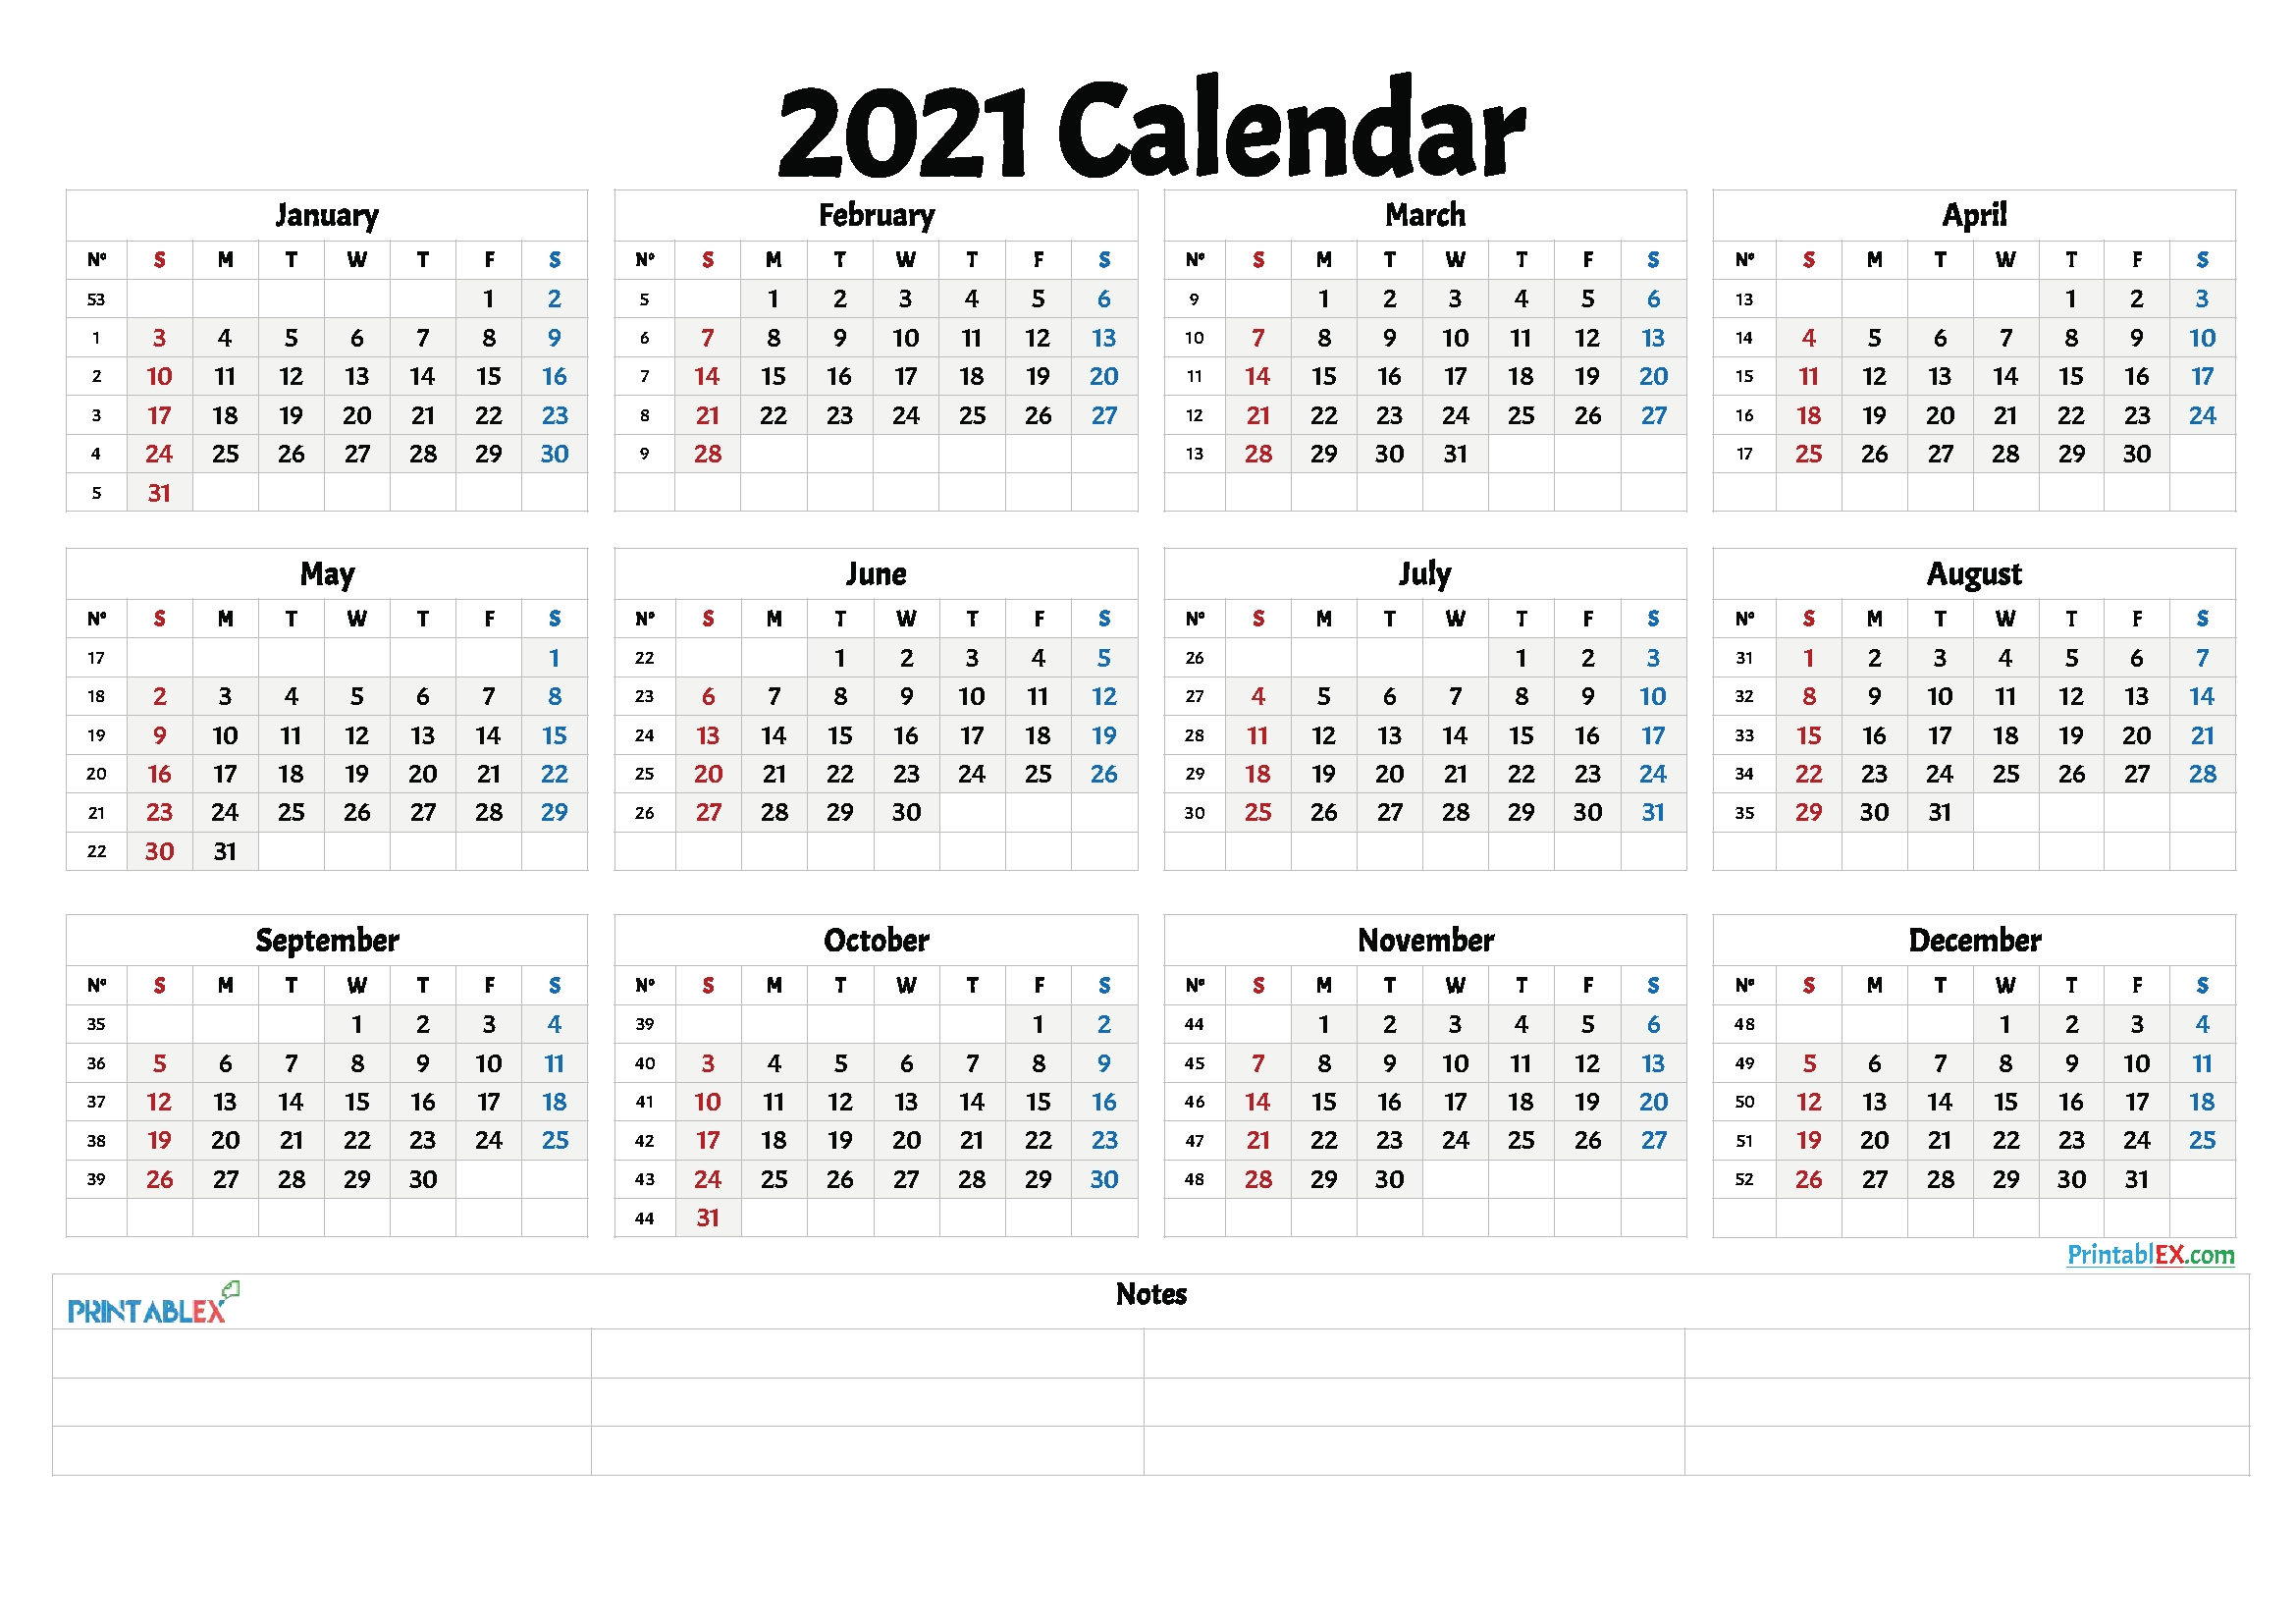 2021-calendar-in-excel-by-week-calendar-printables-free-blank